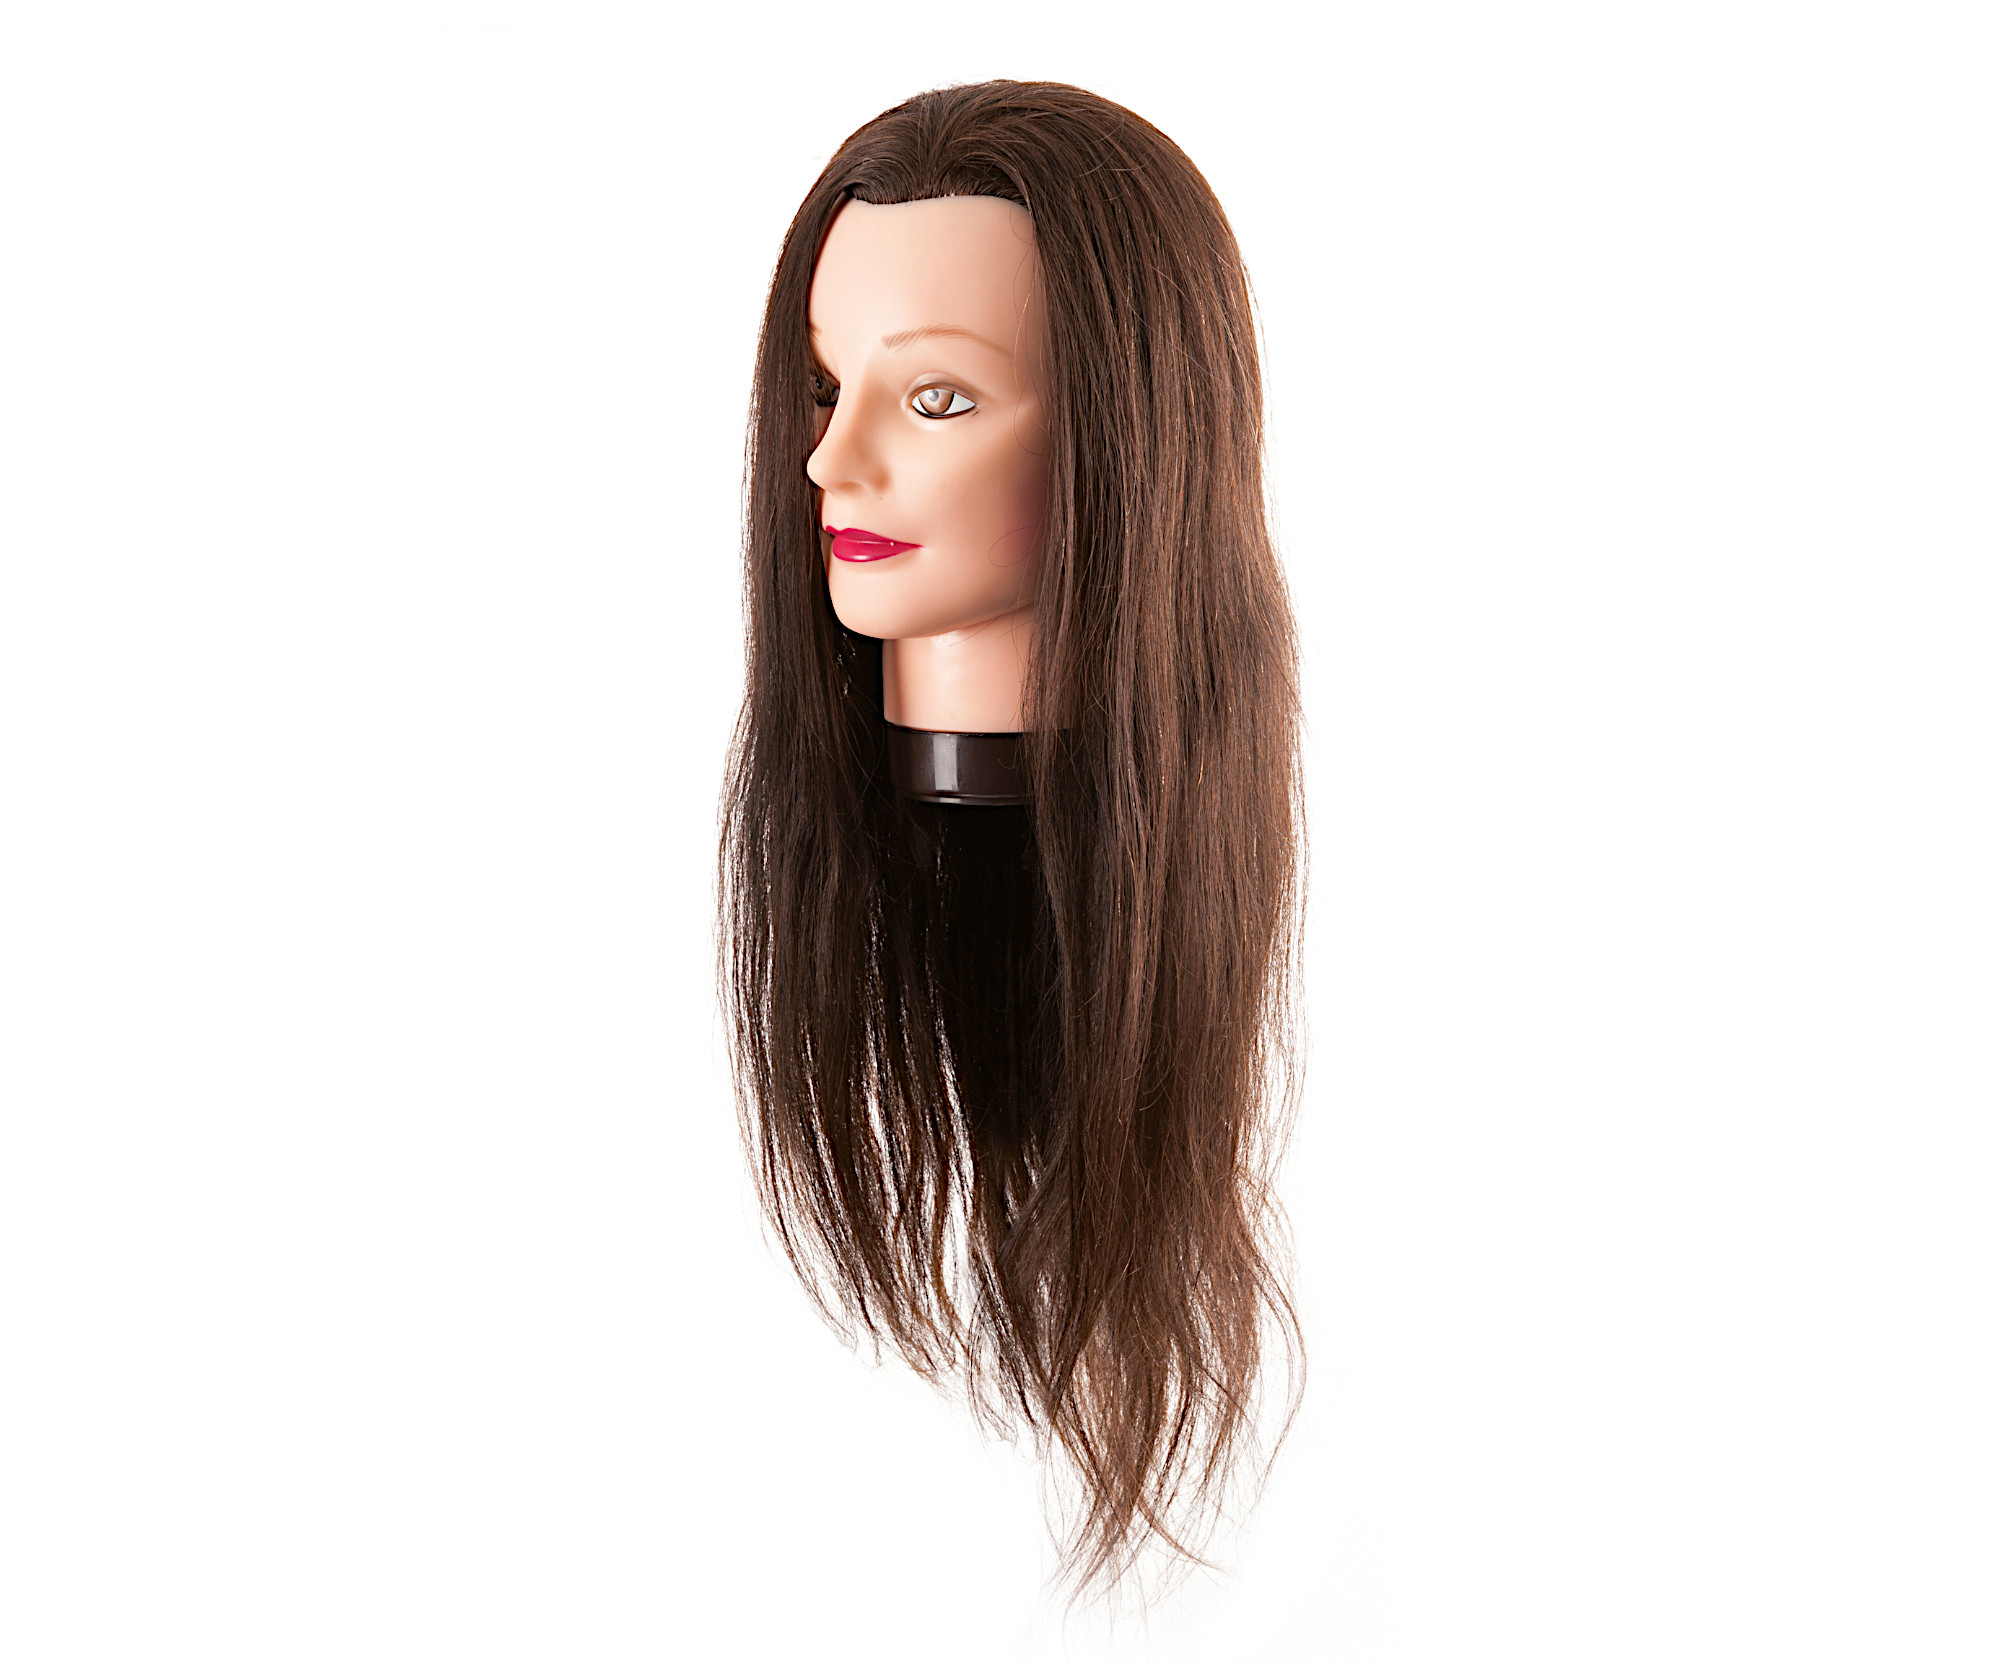 Cvičná hlava s přírodními vlasy Eurostil Profesional - kaštanově hnědá, 55-60 cm (01142) + dárek zdarma